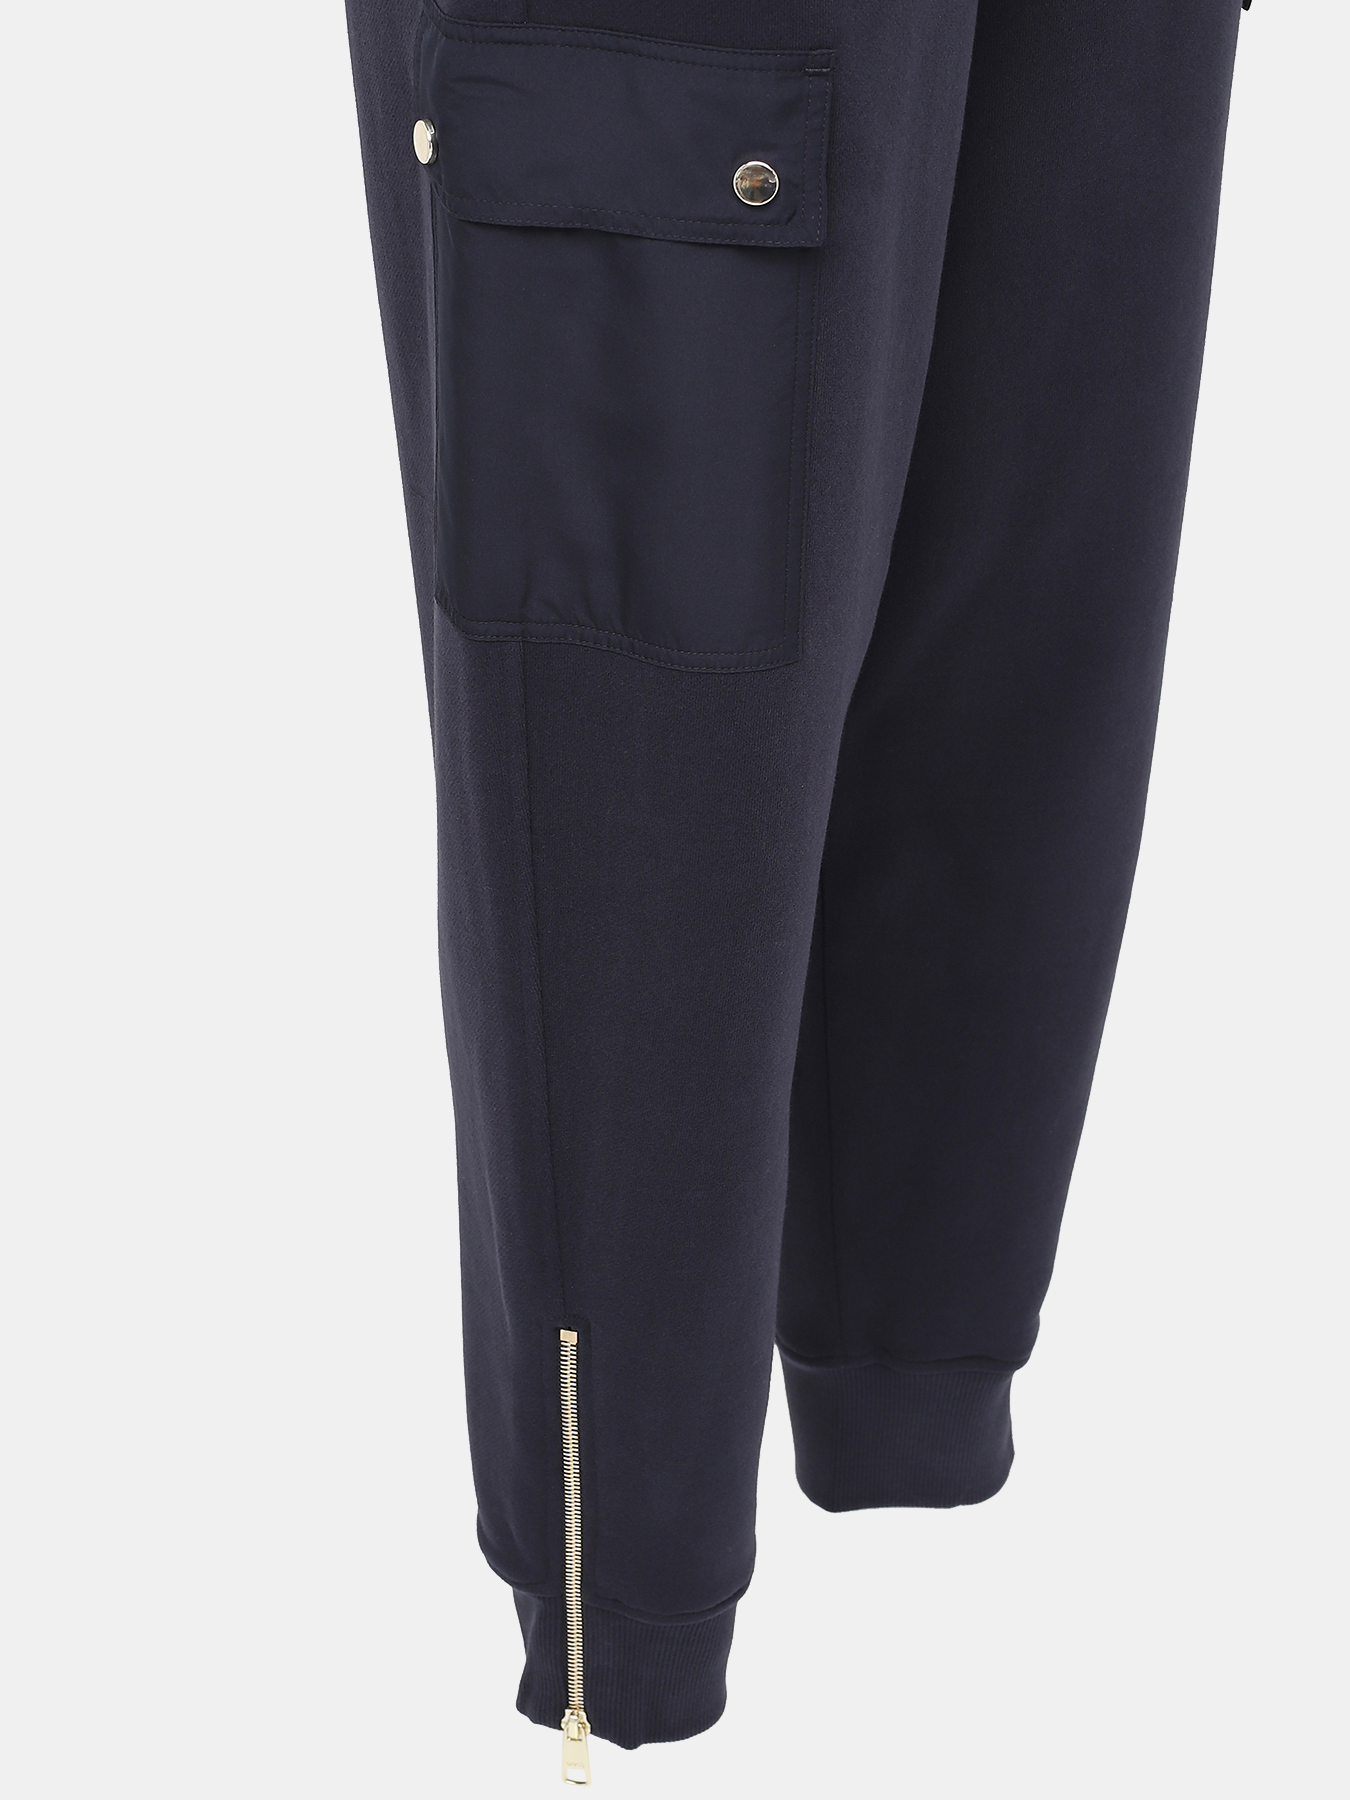 Спортивные брюки Ecargo BOSS 426677-041, цвет темно-синий, размер 40-42 - фото 2